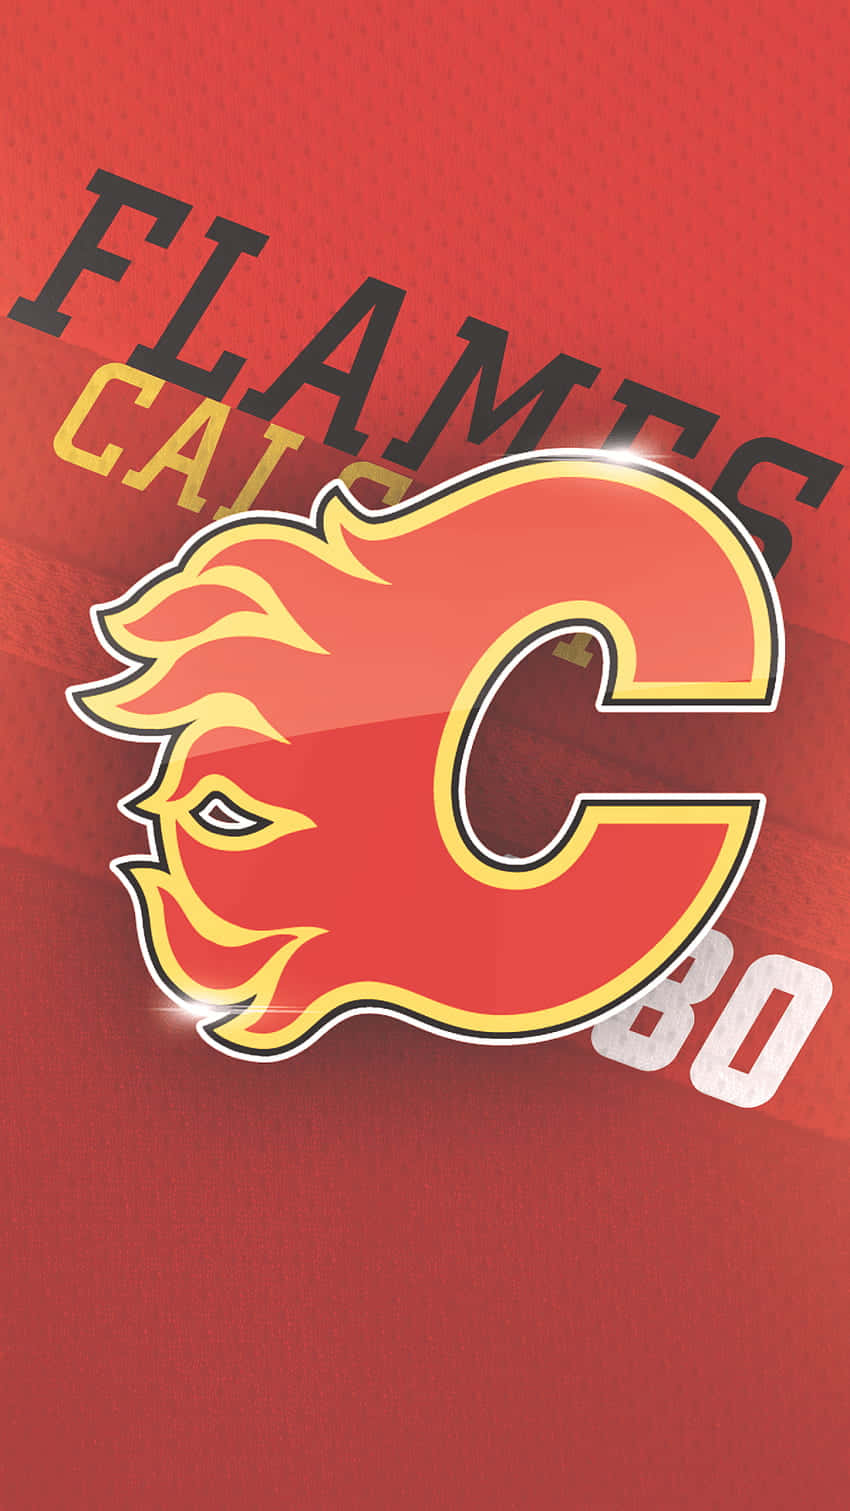 Visdin Støtte Til Calgary Flames Med Stolthed!